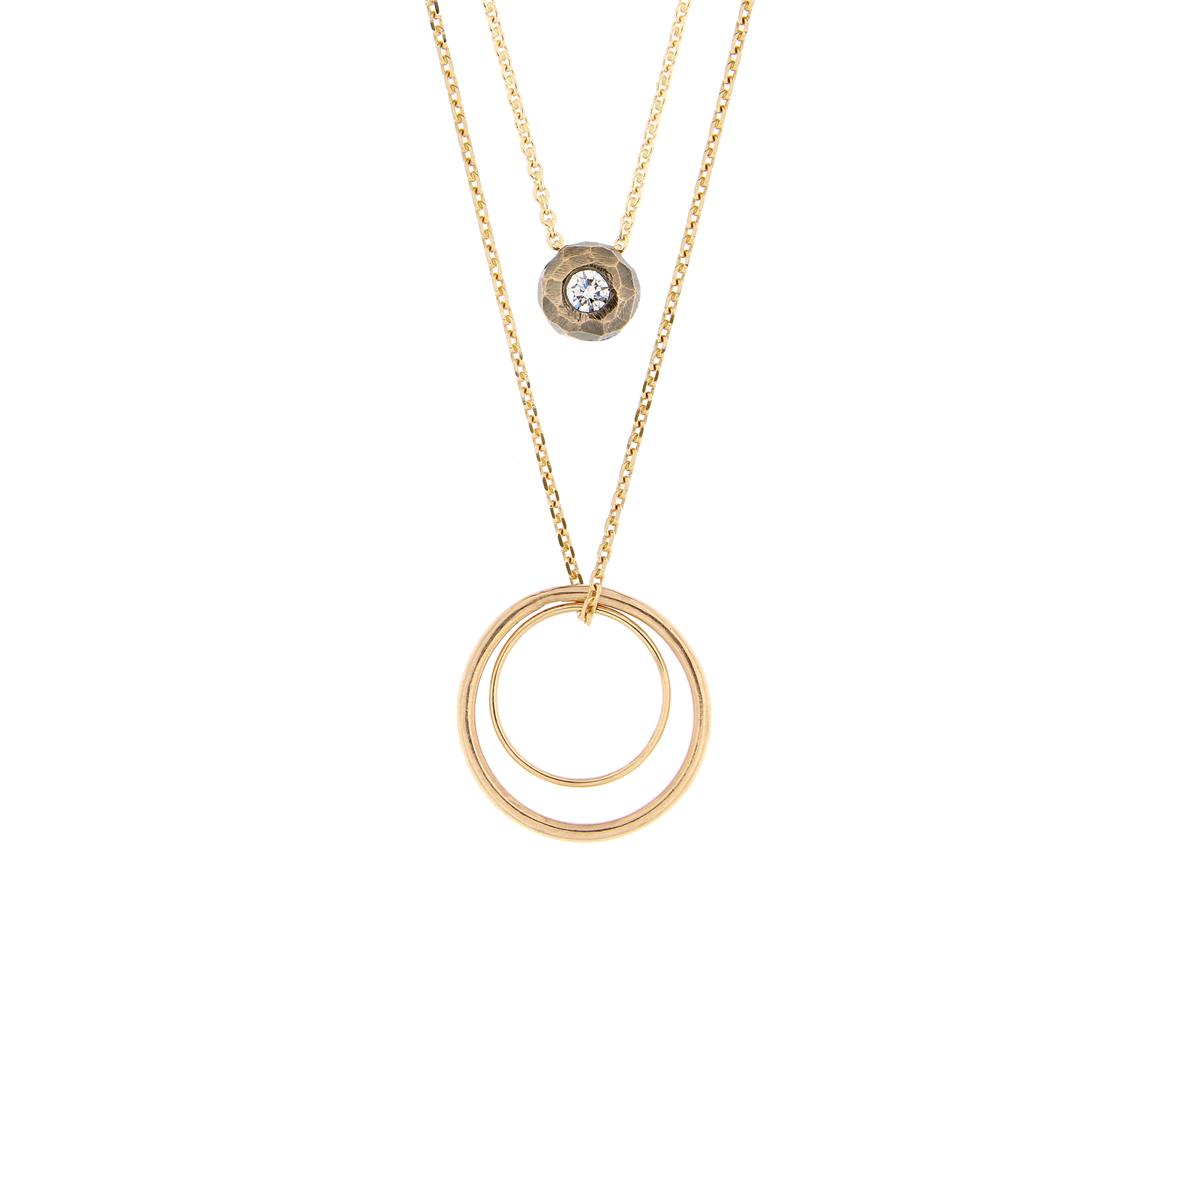 Katie g. Jewellery - Ringe auf Ketten in Gold mit einem Chunky Diamond Pendant in 14kt. Roségold